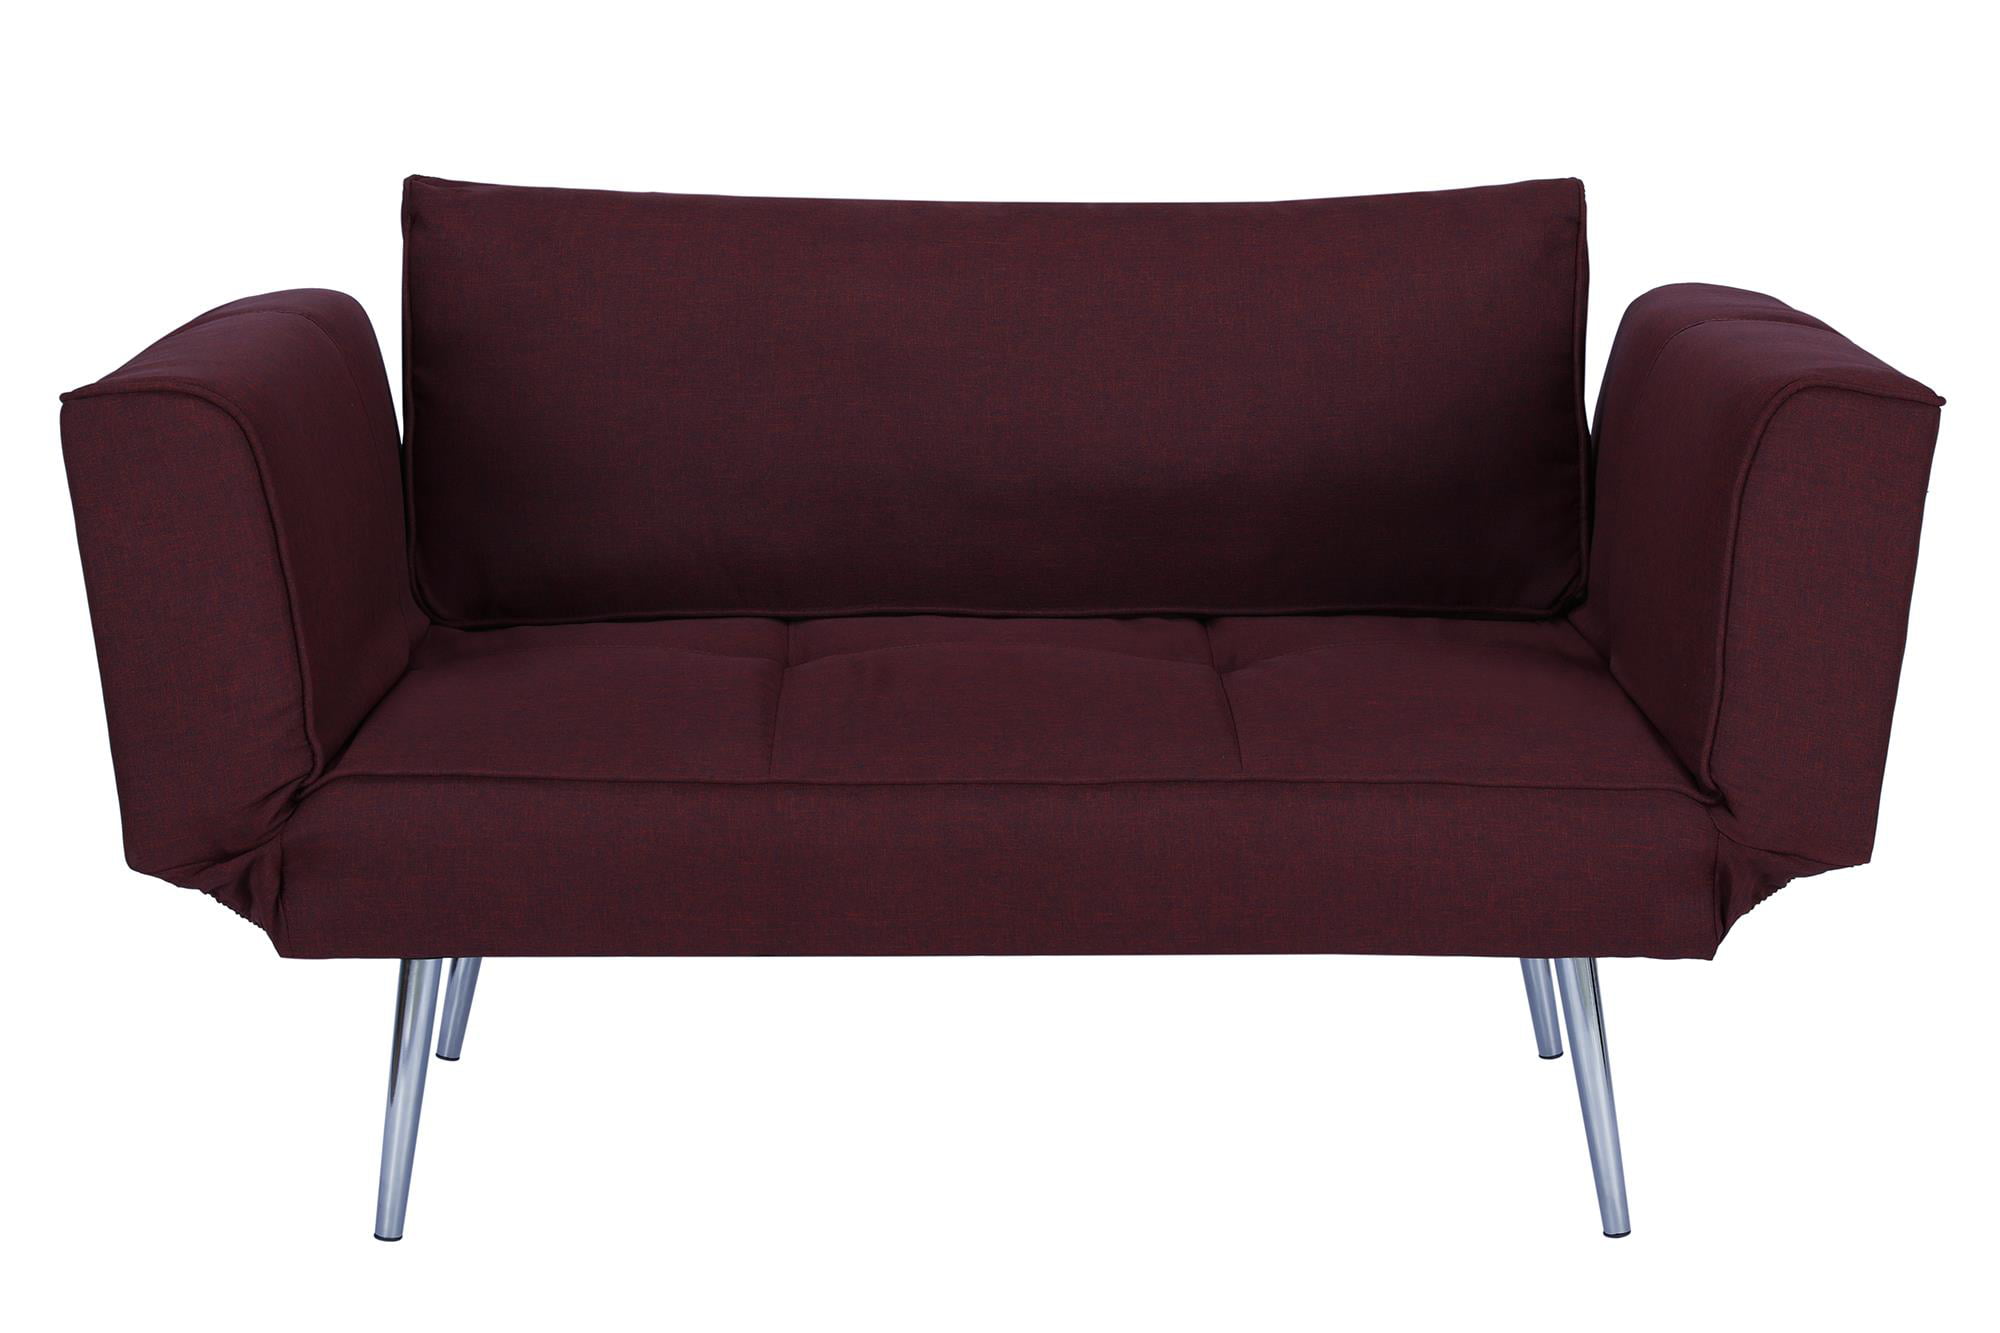 dhp euro futon sofa bed with magazine storage